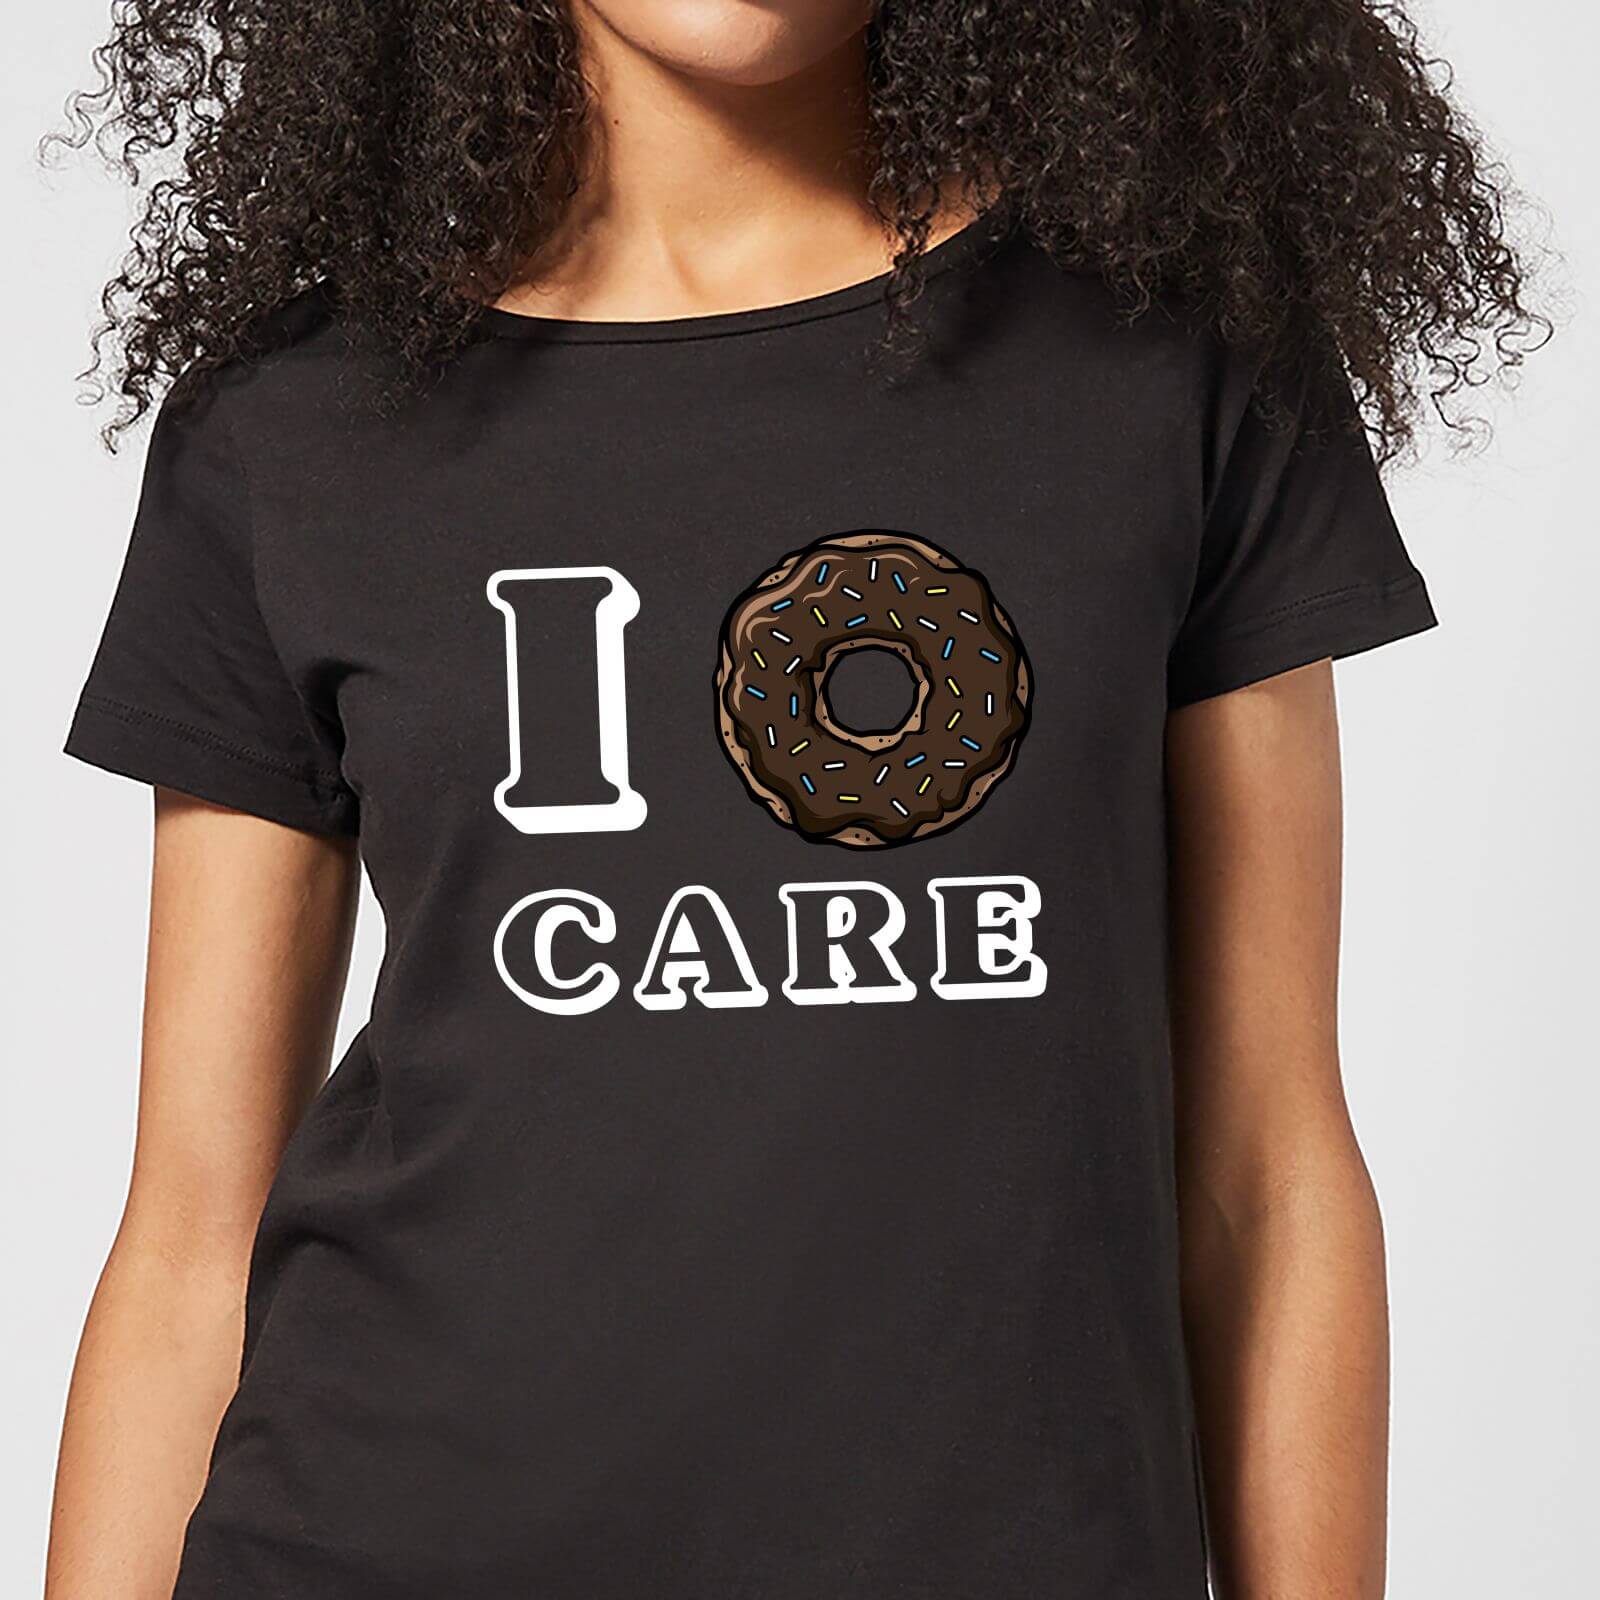 I Donut Care Women's T-Shirt - Black - 3XL - Black